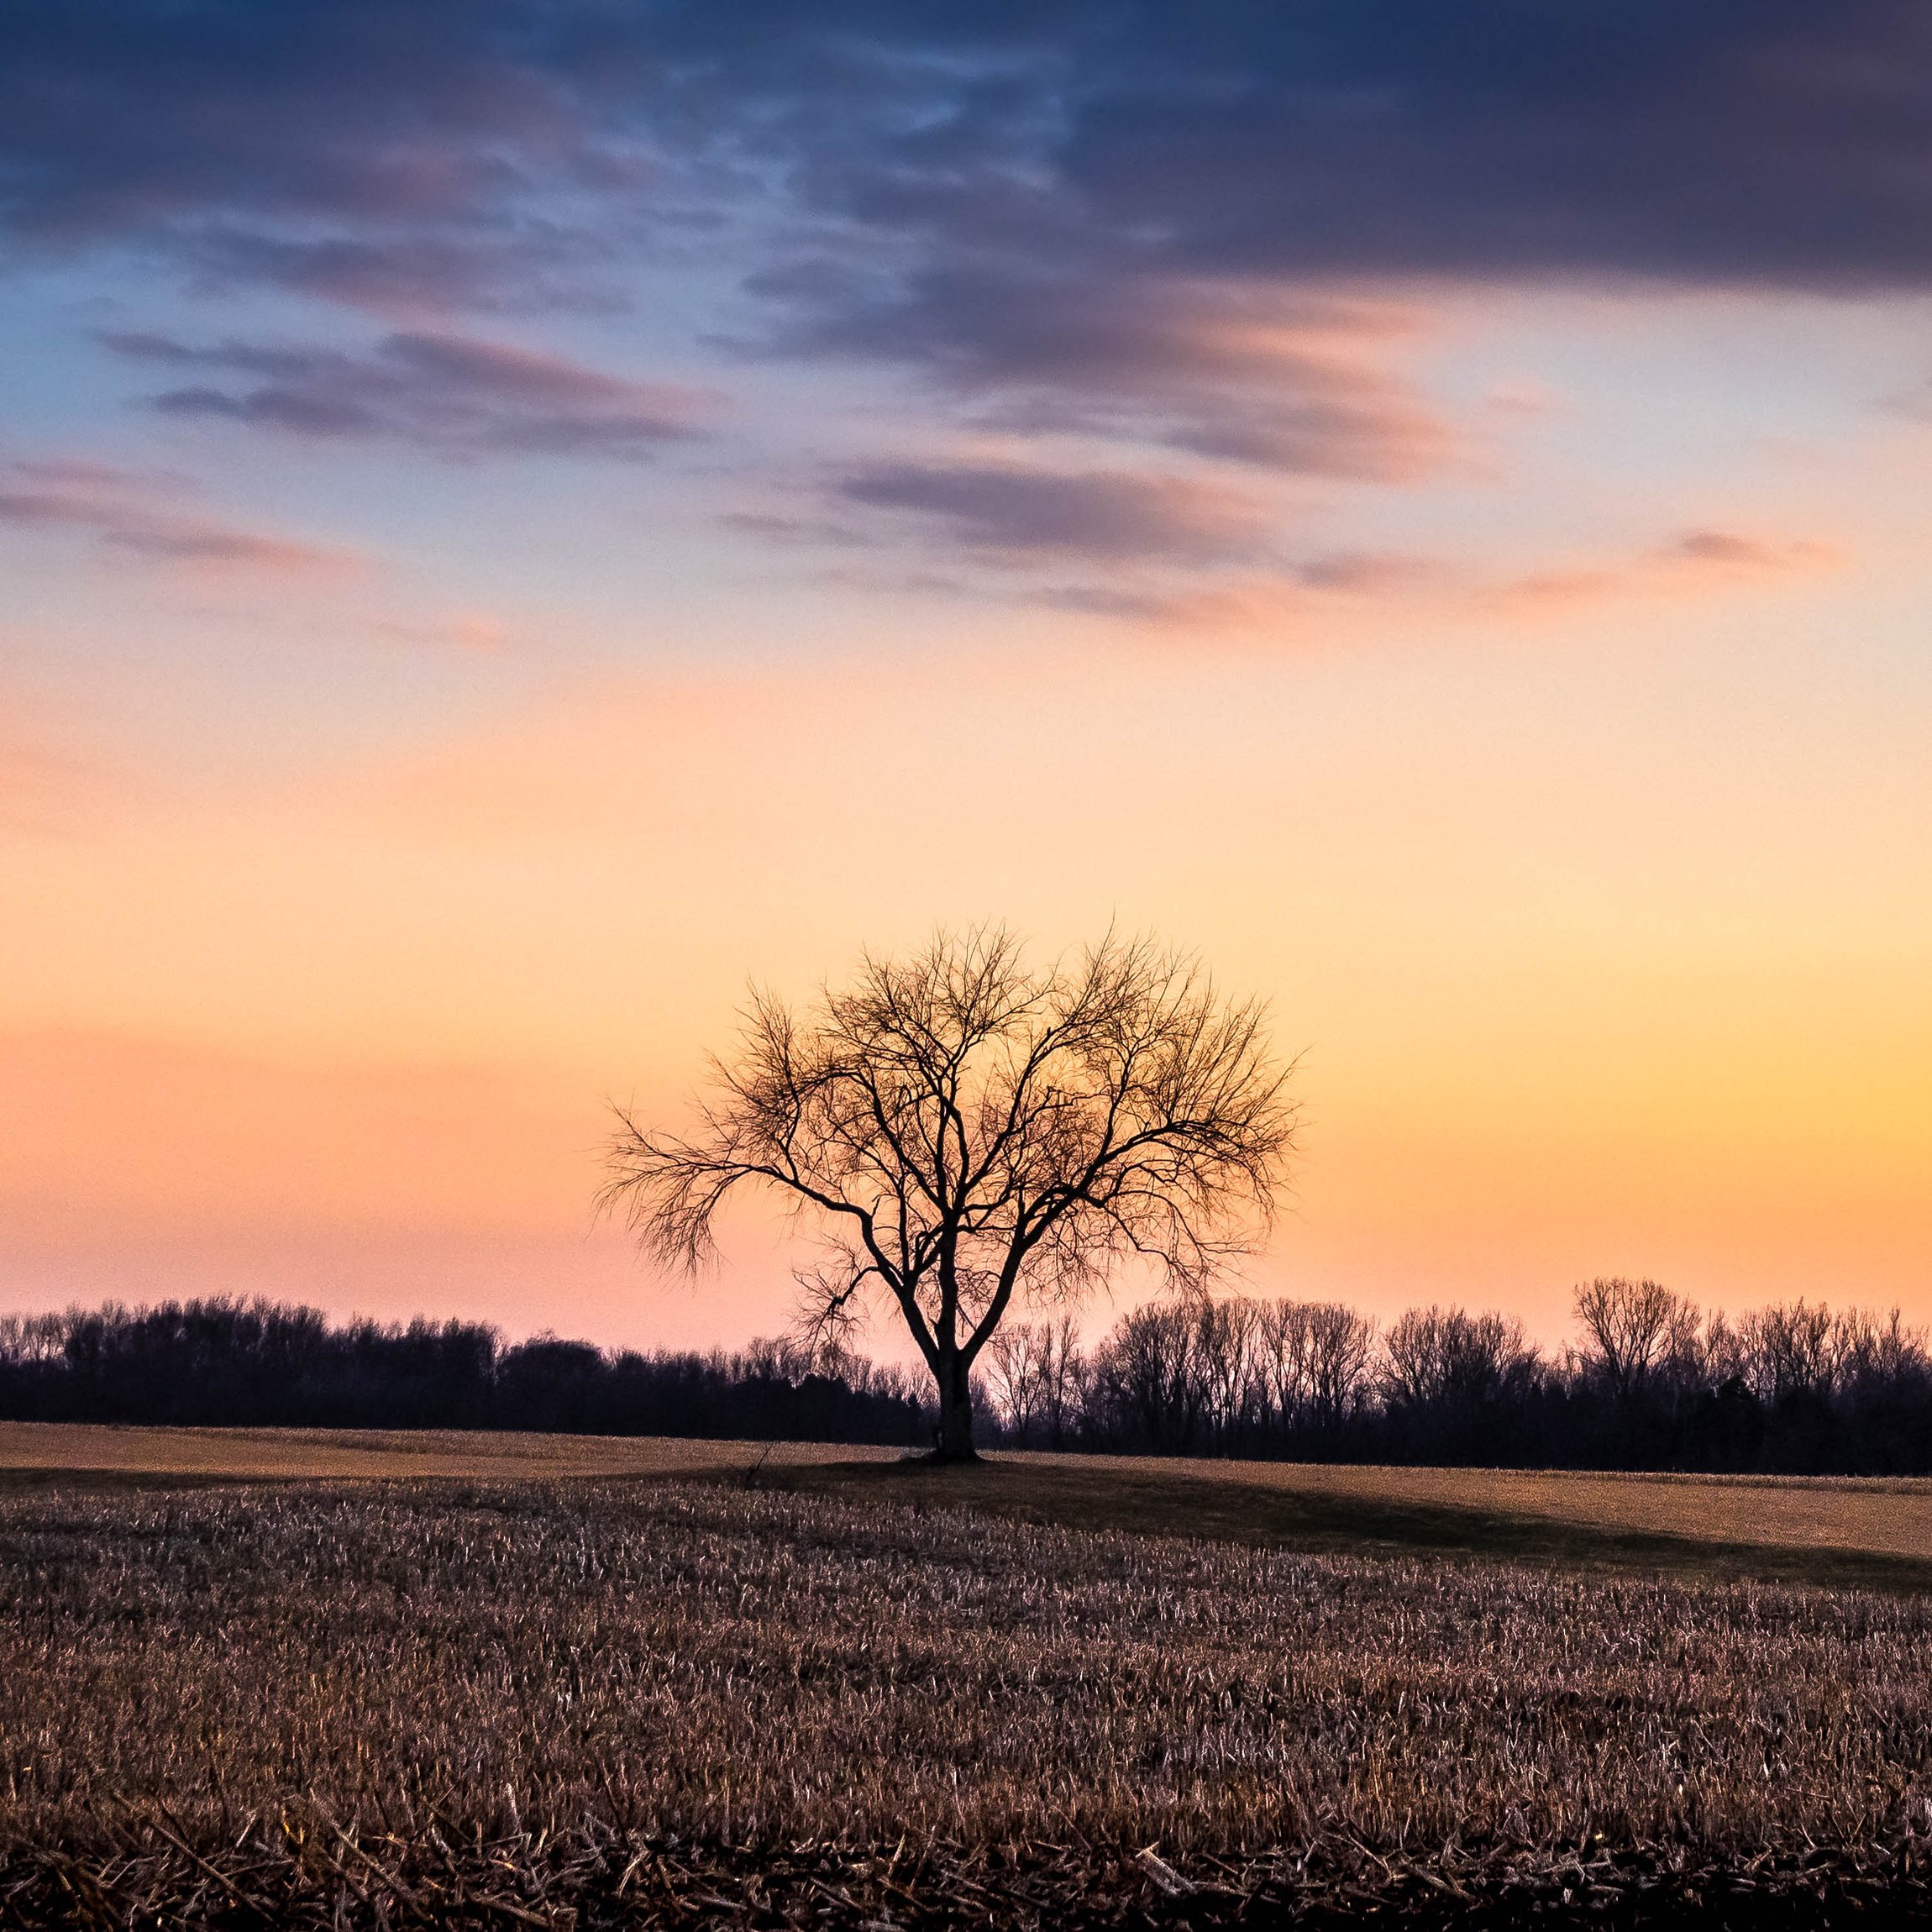  The “farm tree” at dusk, MI 